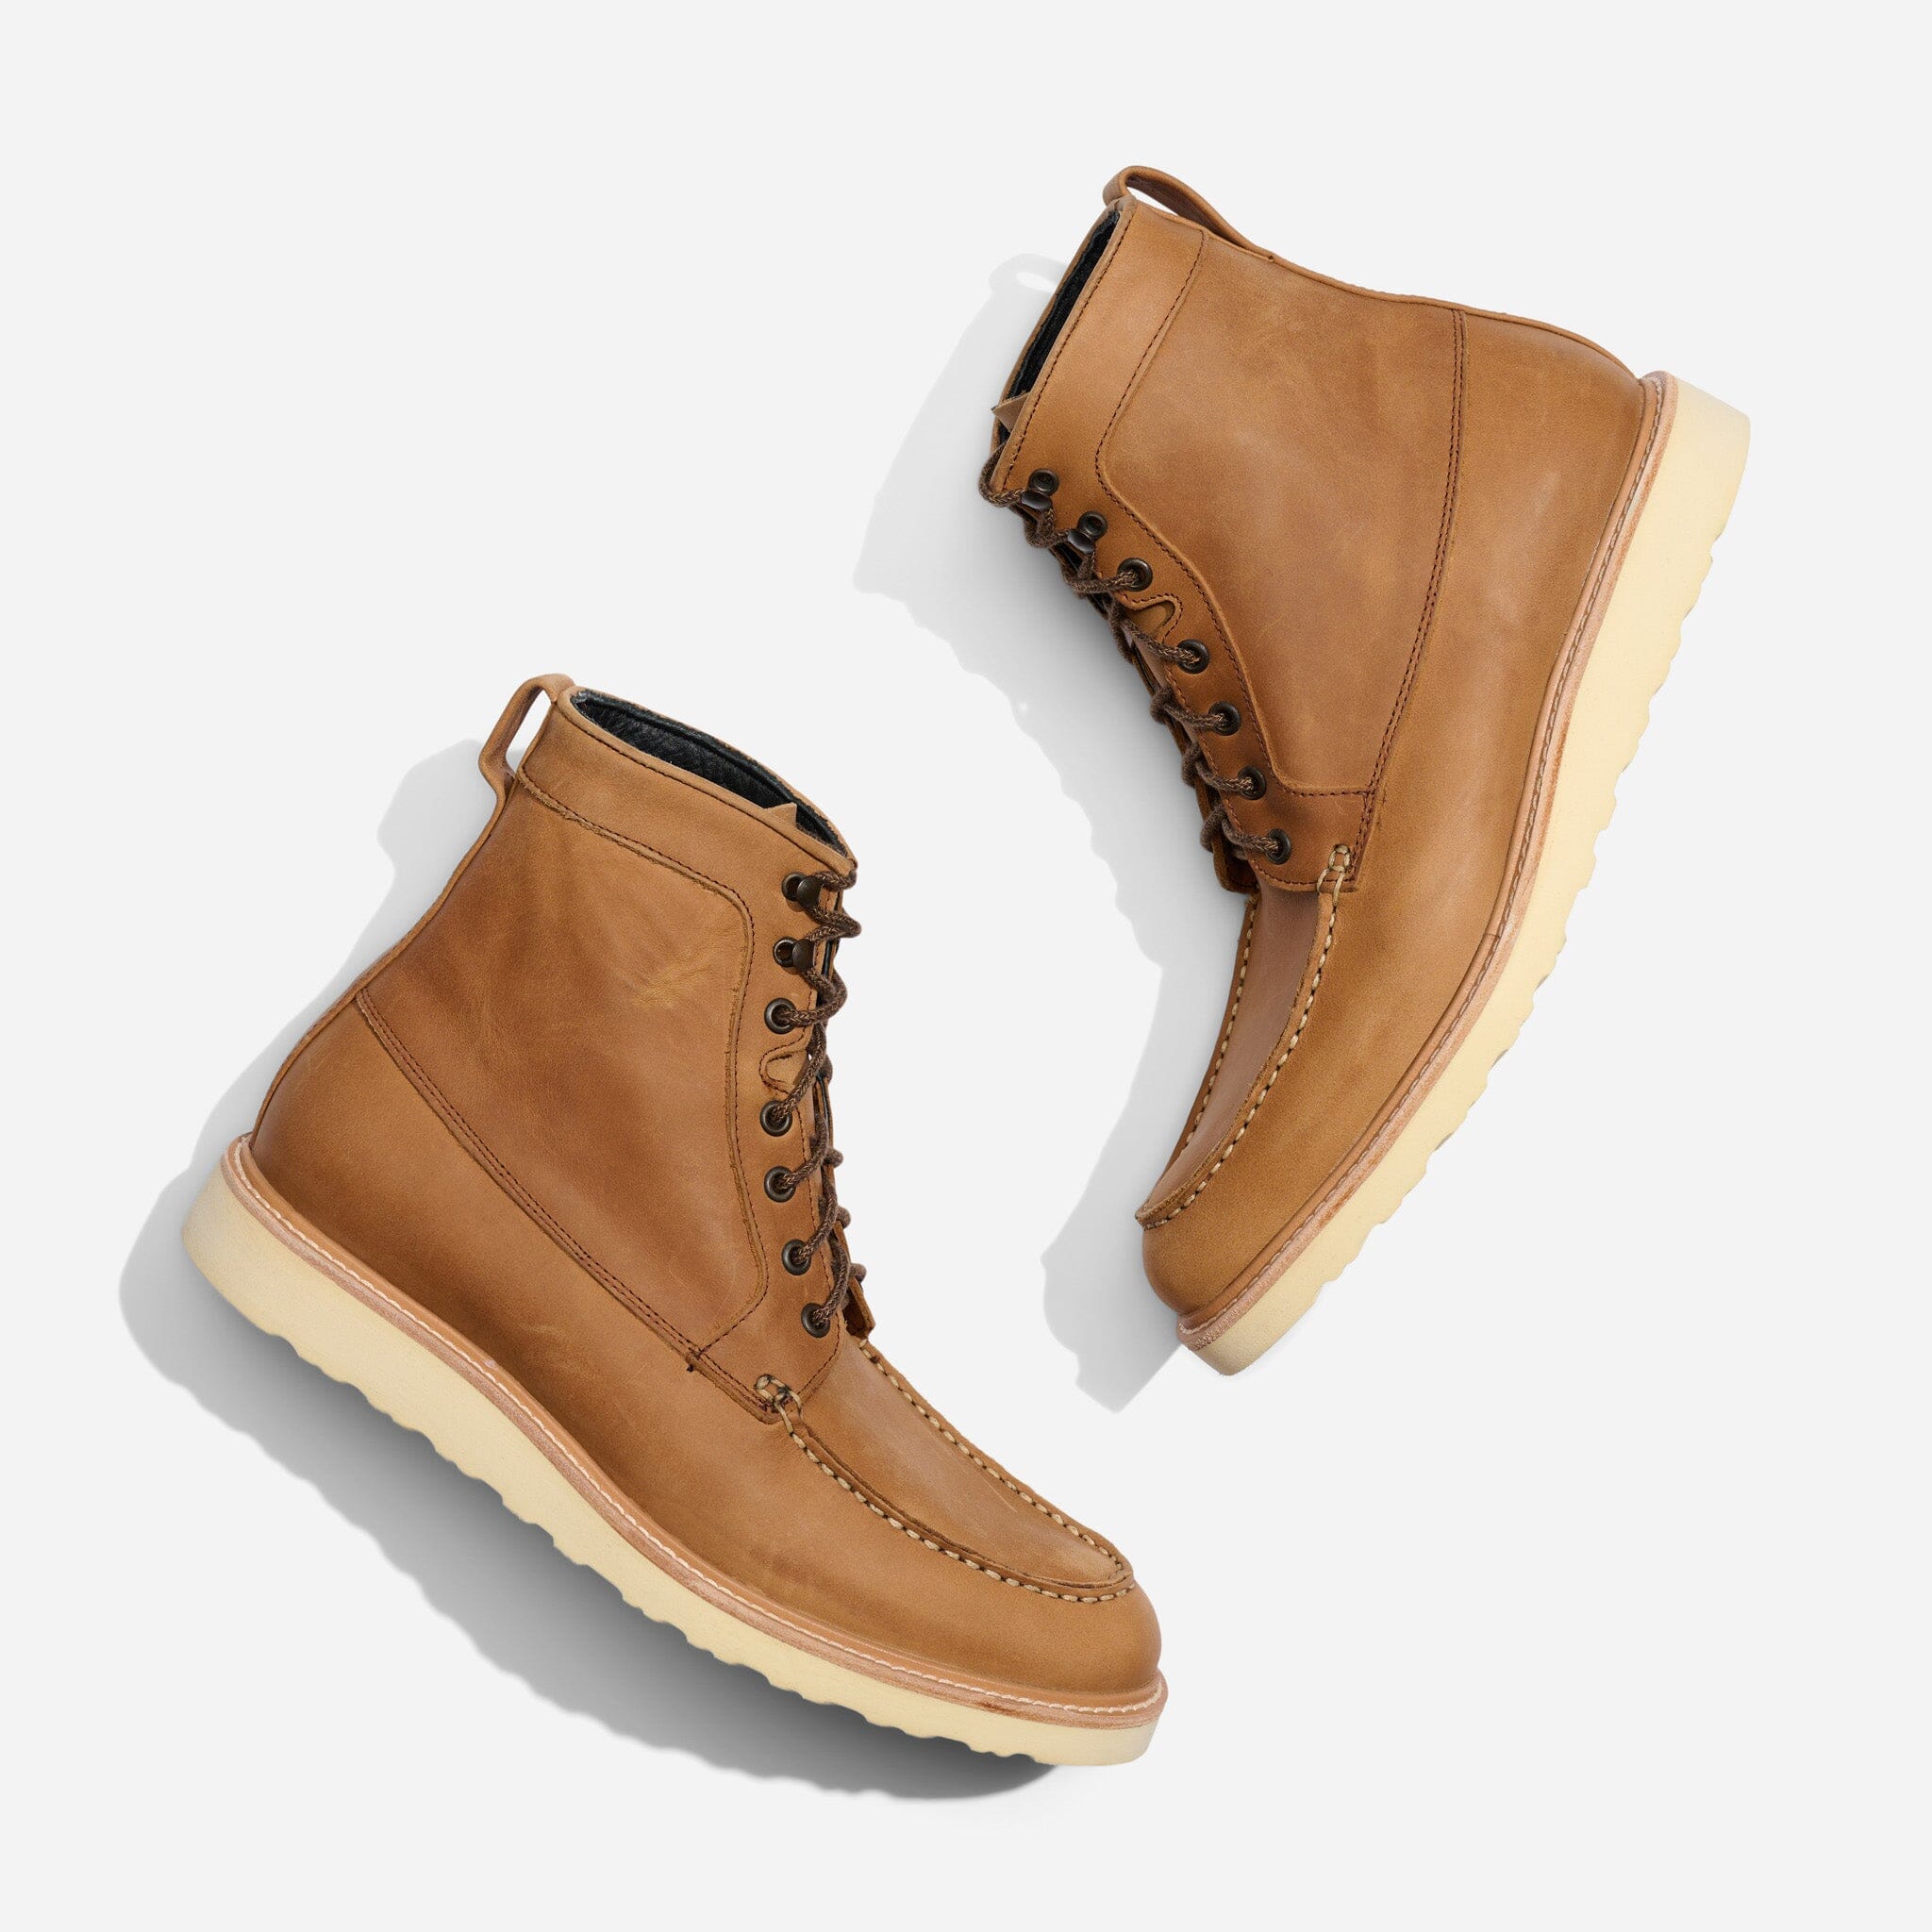 Terra Moc Toe Sneaker Boot